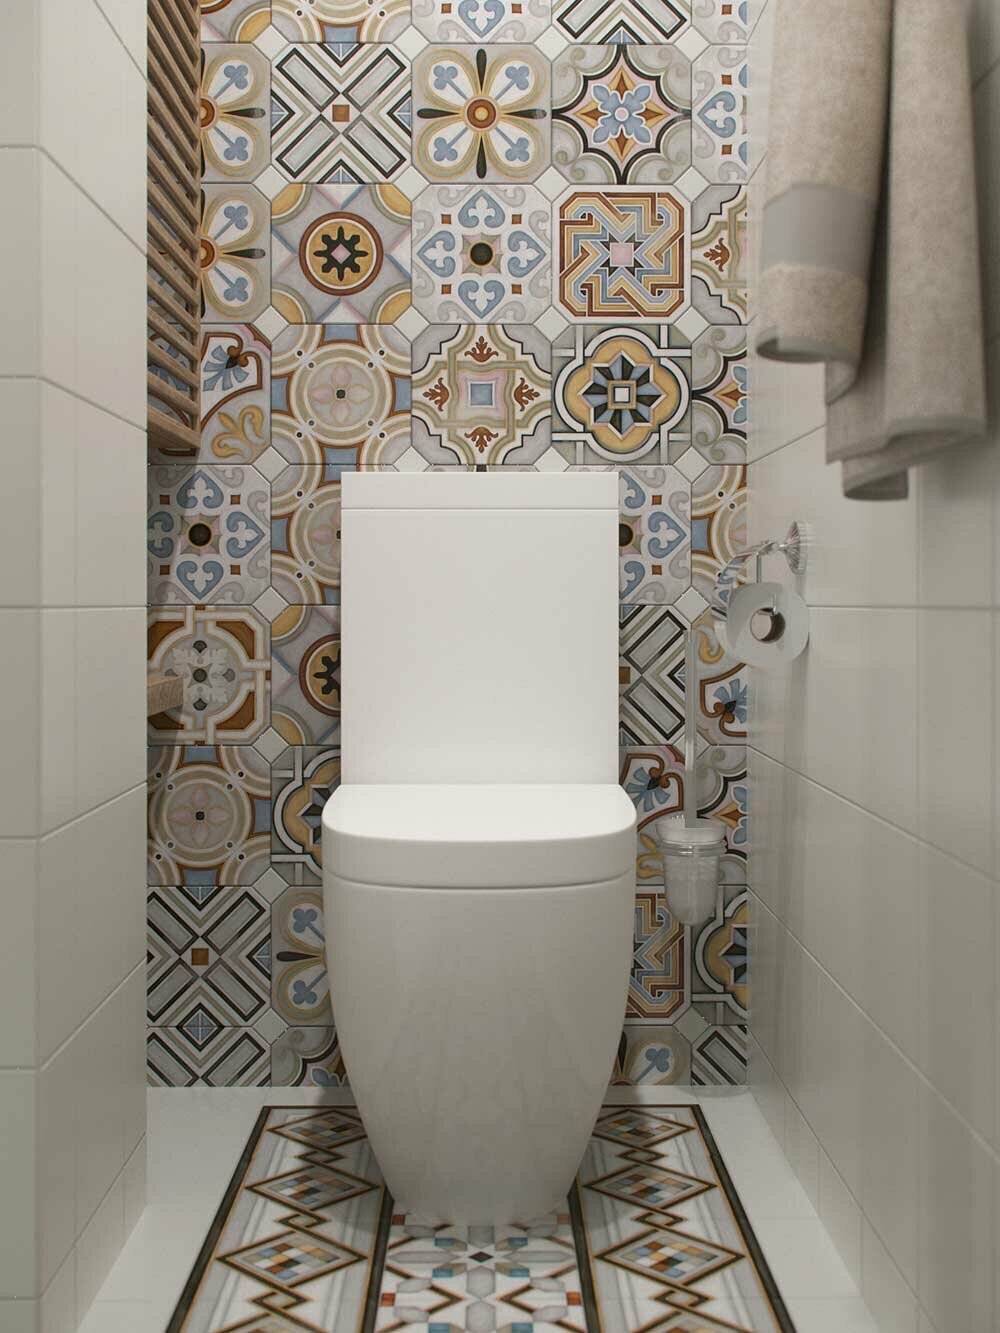 Плитка для маленького туалета фото дизайн